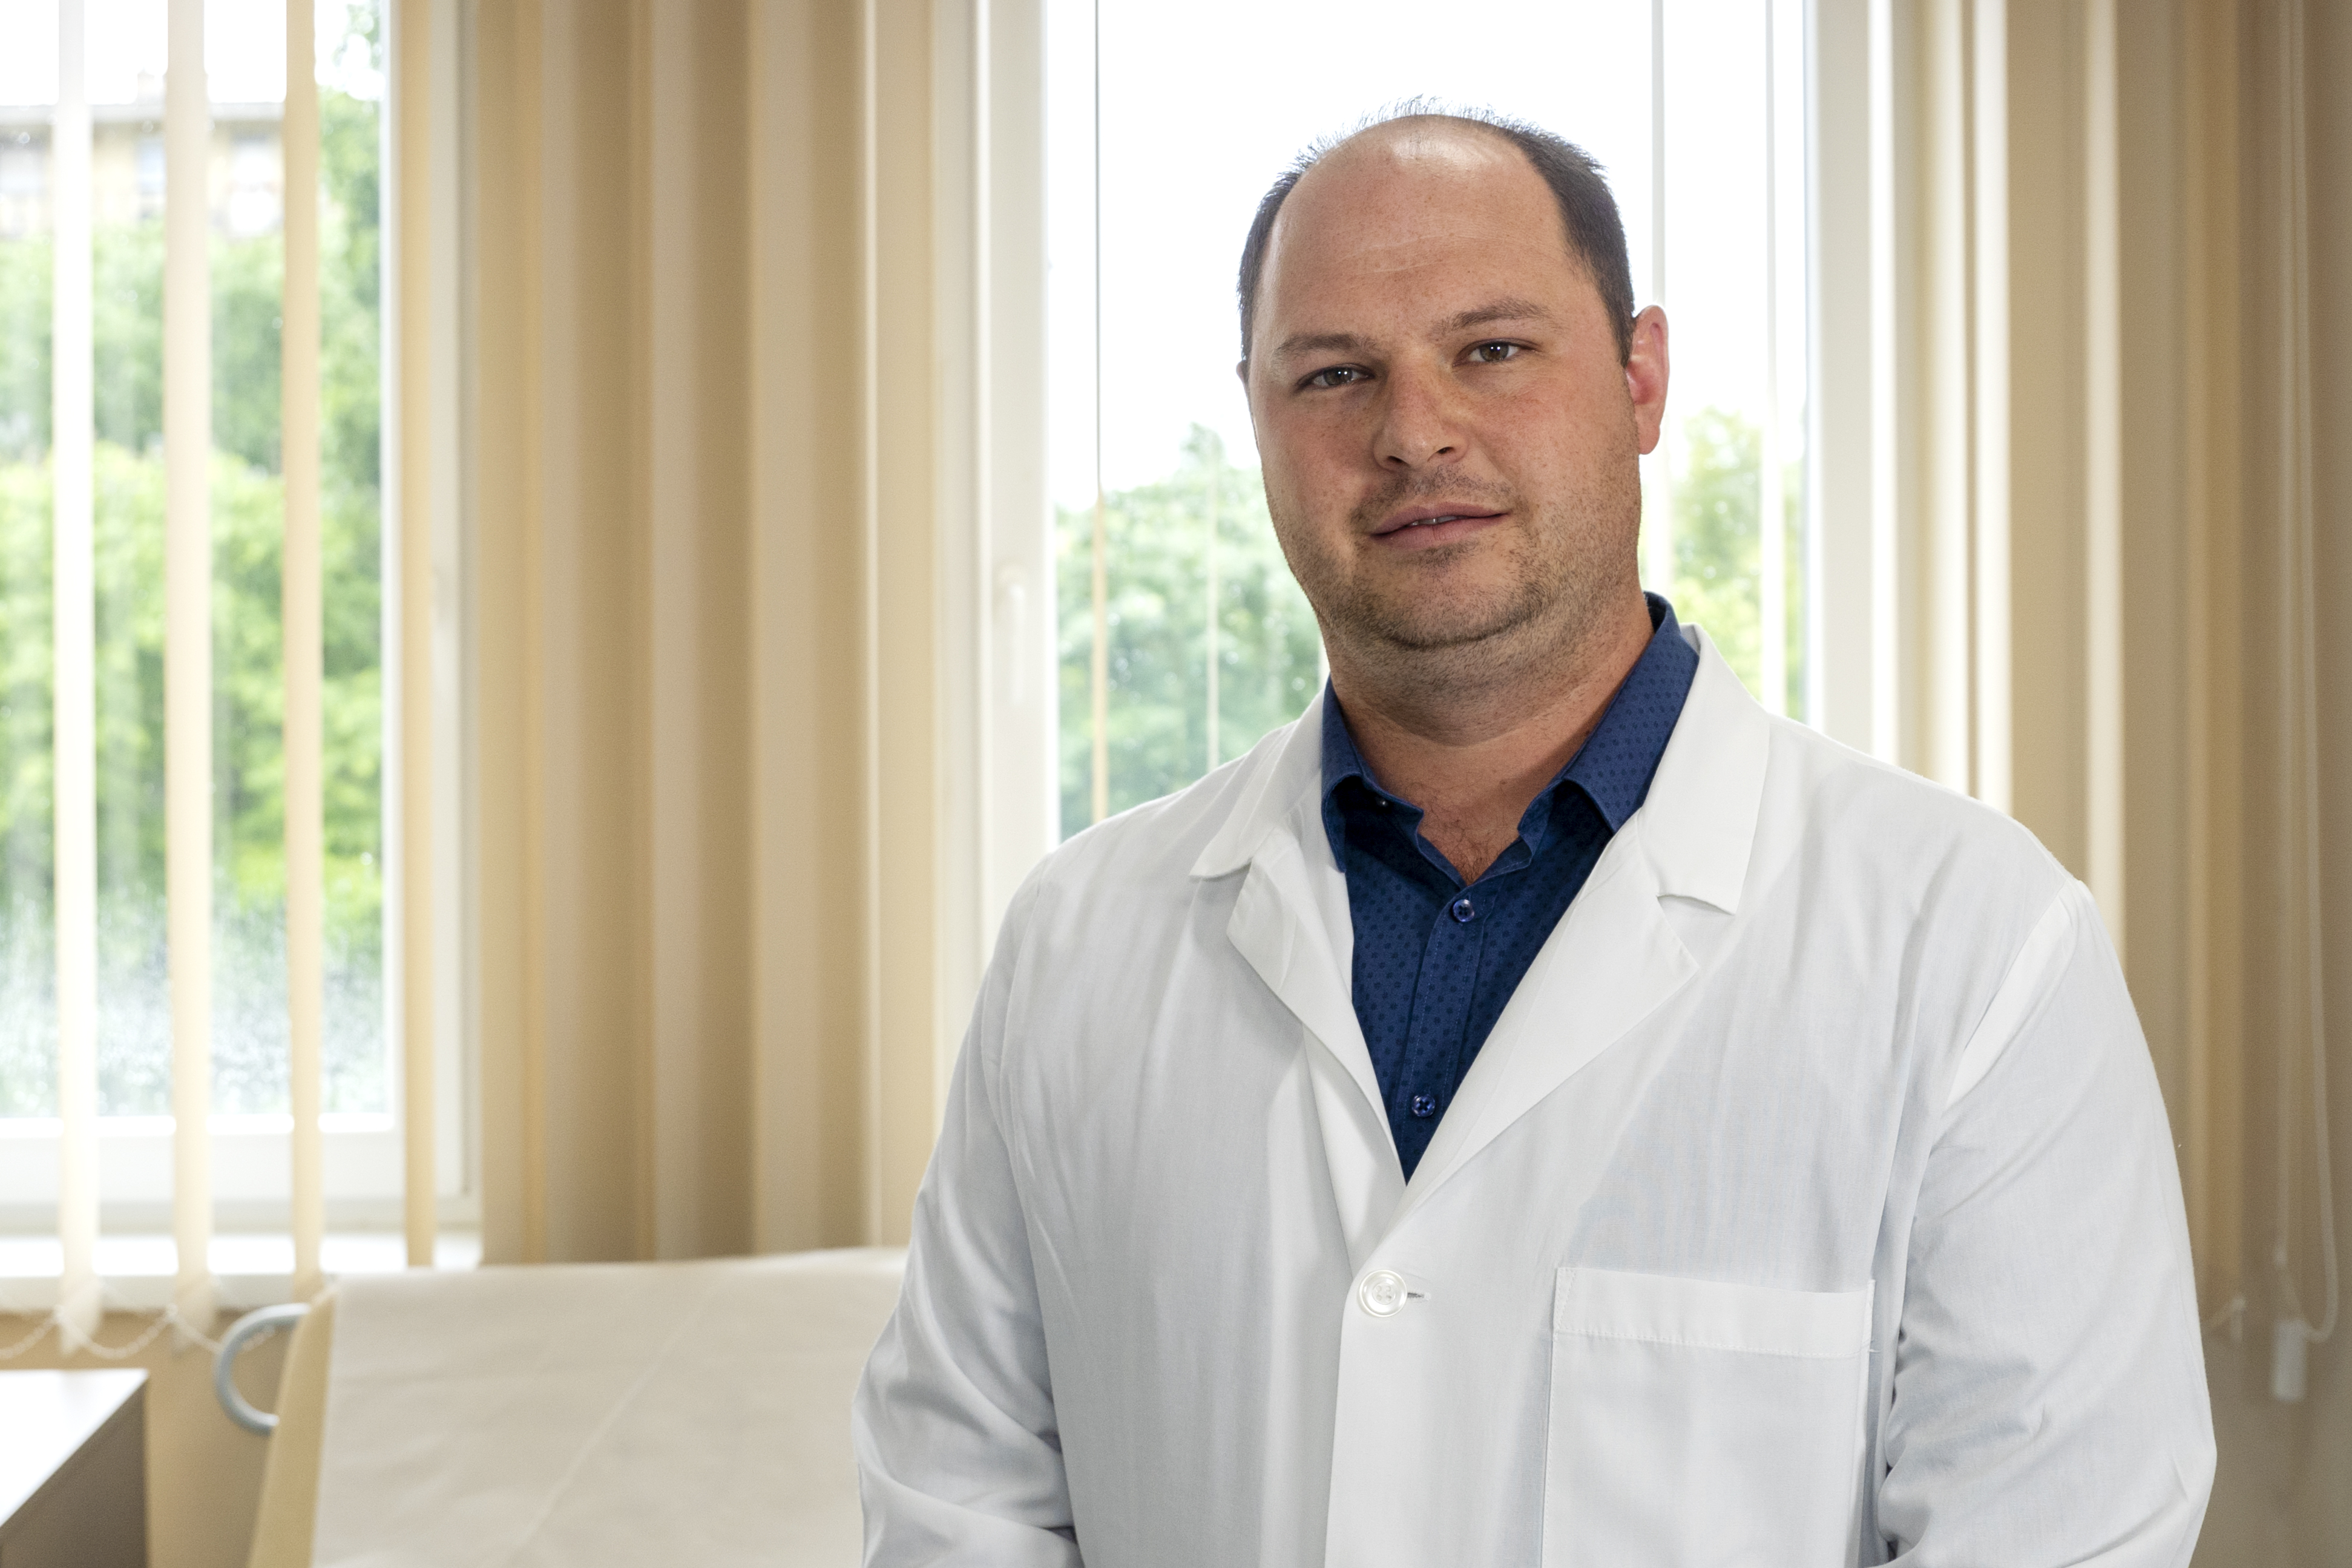 Innovatív szemlélettel a betegek javáért - Interjú Dr. Abonyi Bence ortopéd szakorvossal